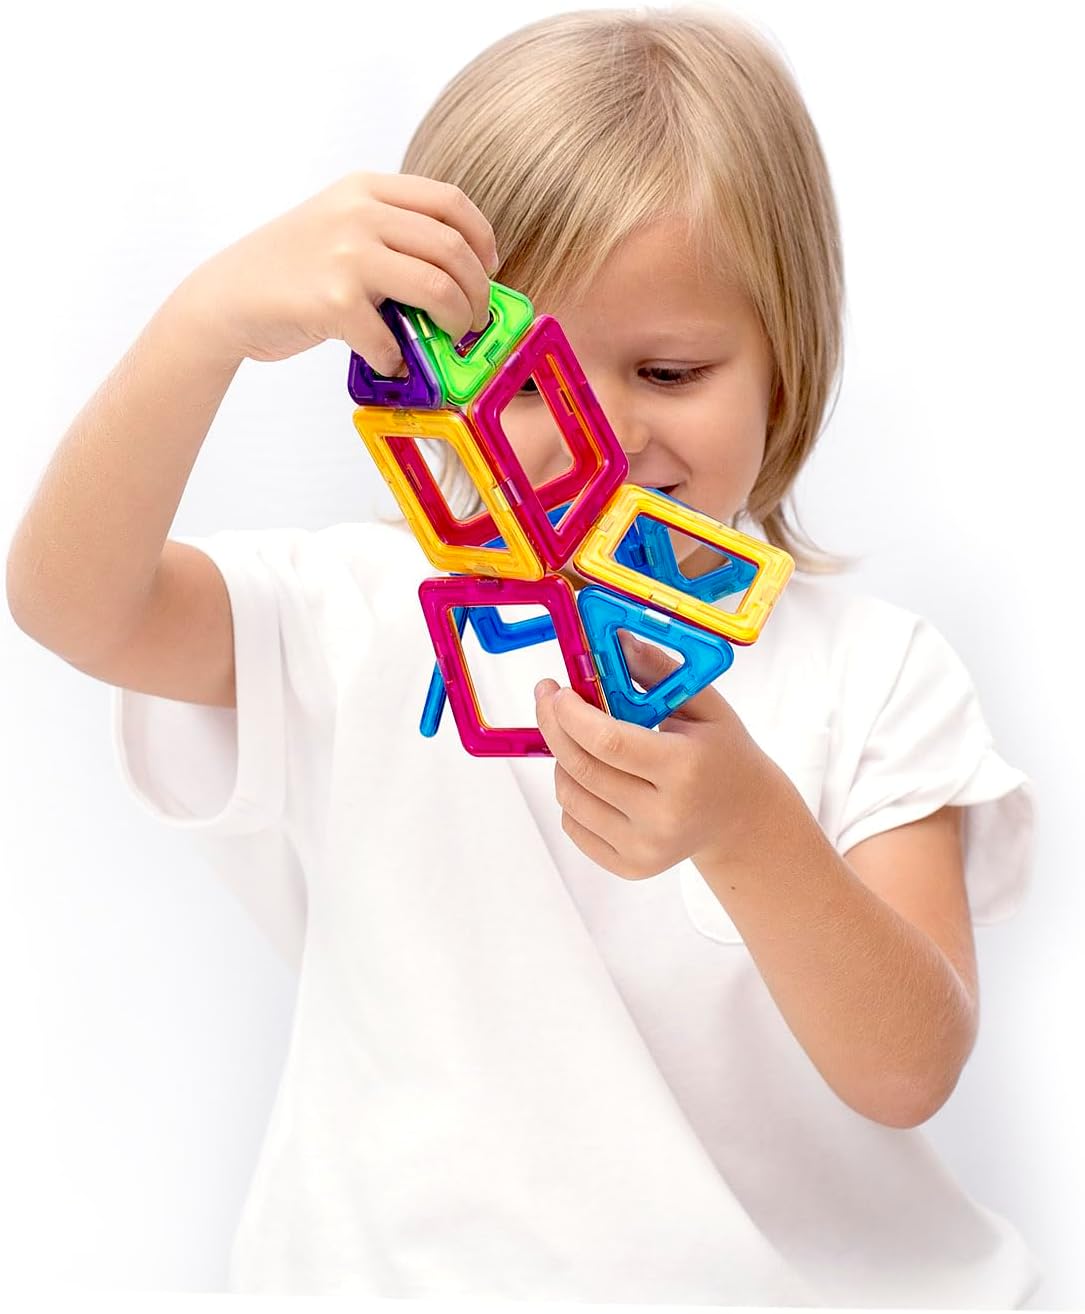 Melofaver Magnetische Bausteine Magnet Montessori Spielzeug ab 3 4